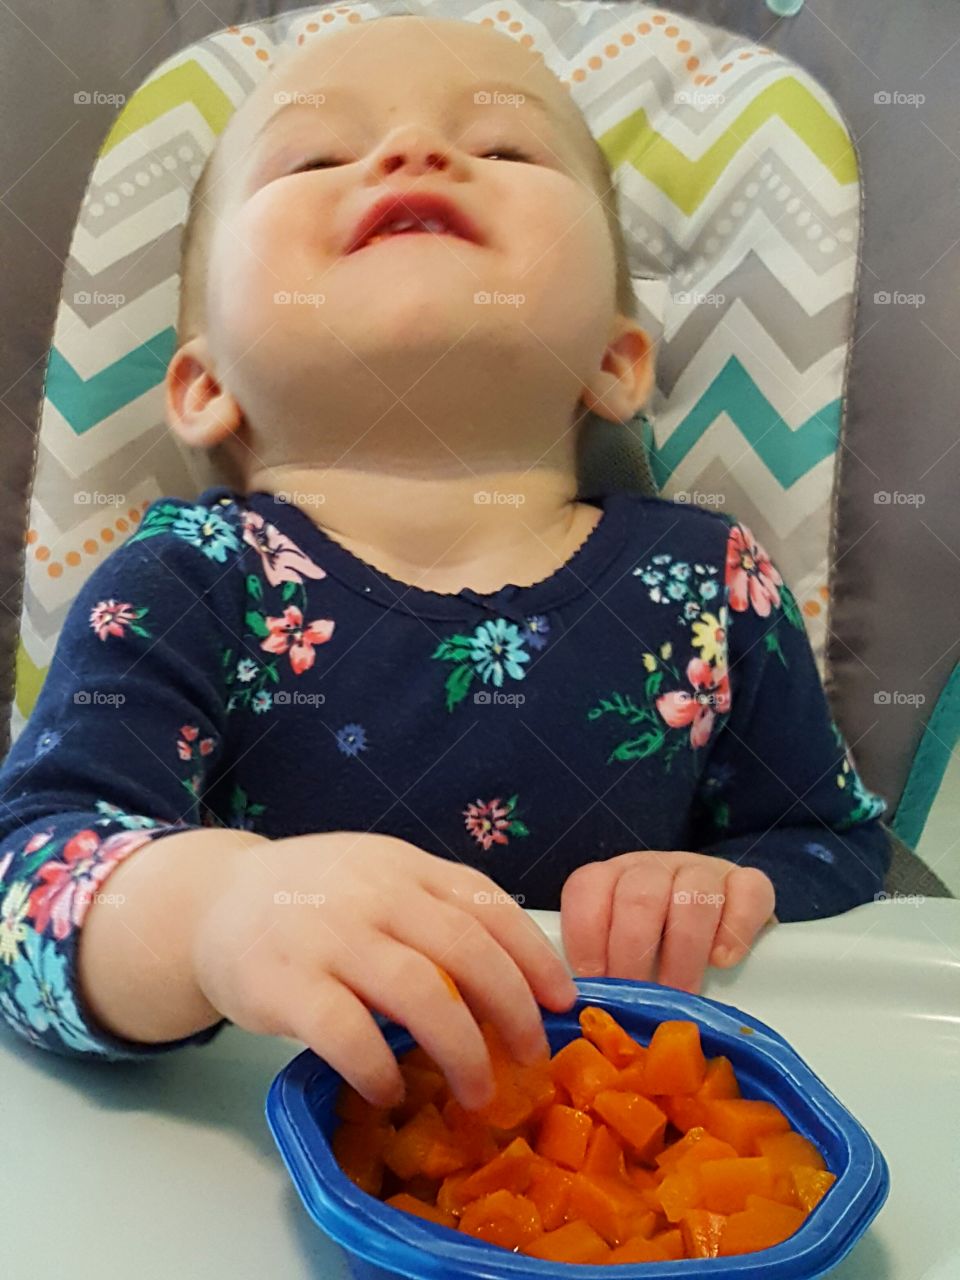 Yes! I love carrots!